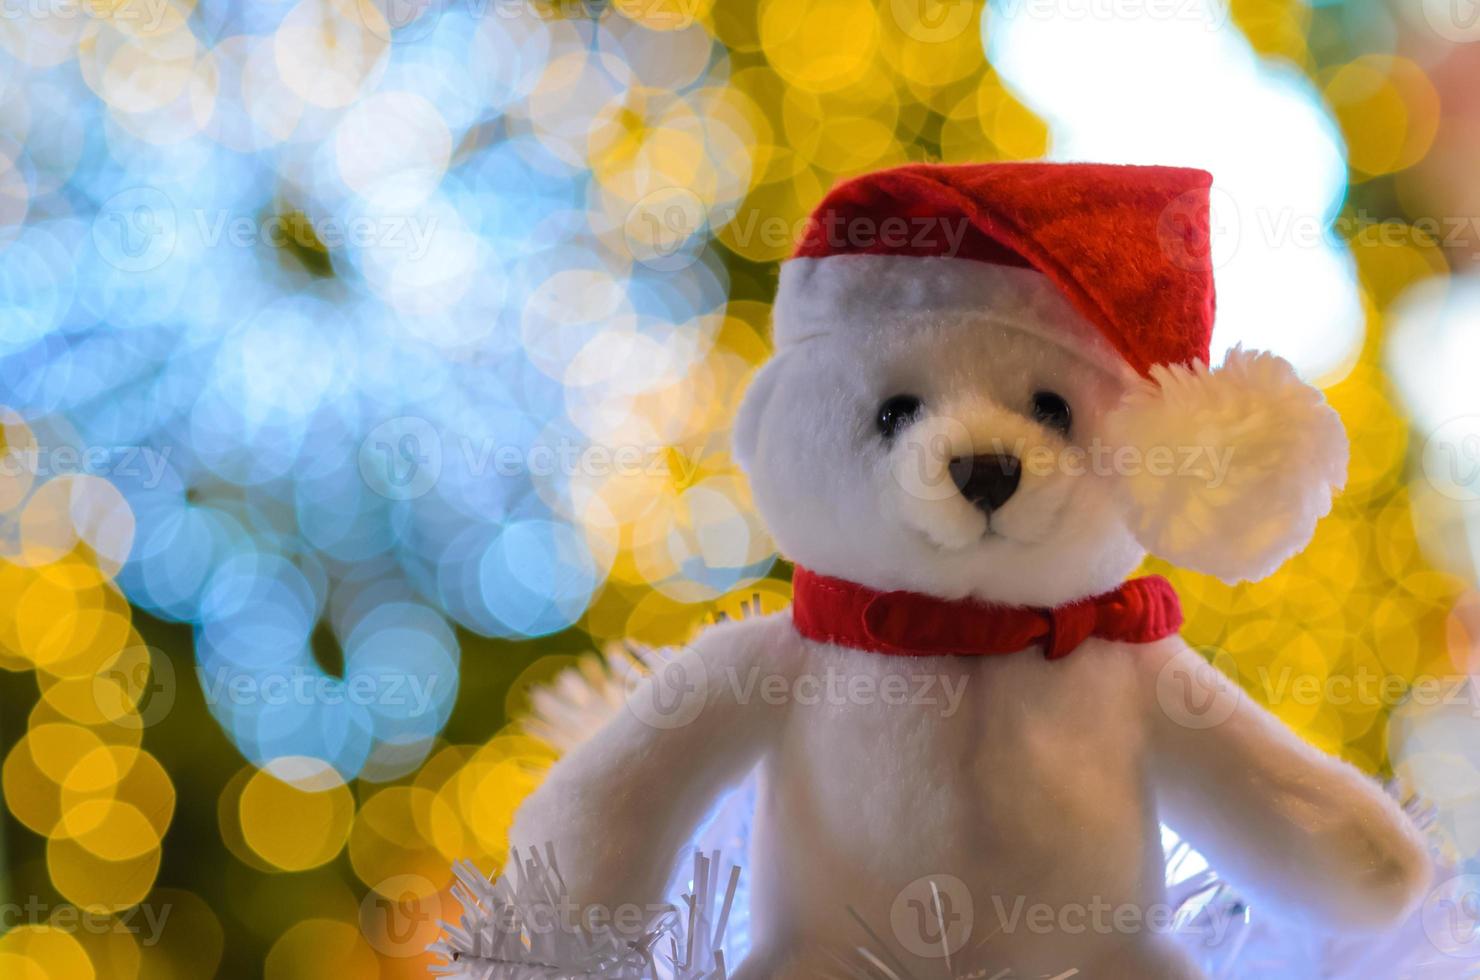 selettivo messa a fuoco su Santa Claus orsacchiotto orso occhi chi indossare cappello seduta nel davanti di colorato bokeh luci di Natale albero. foto